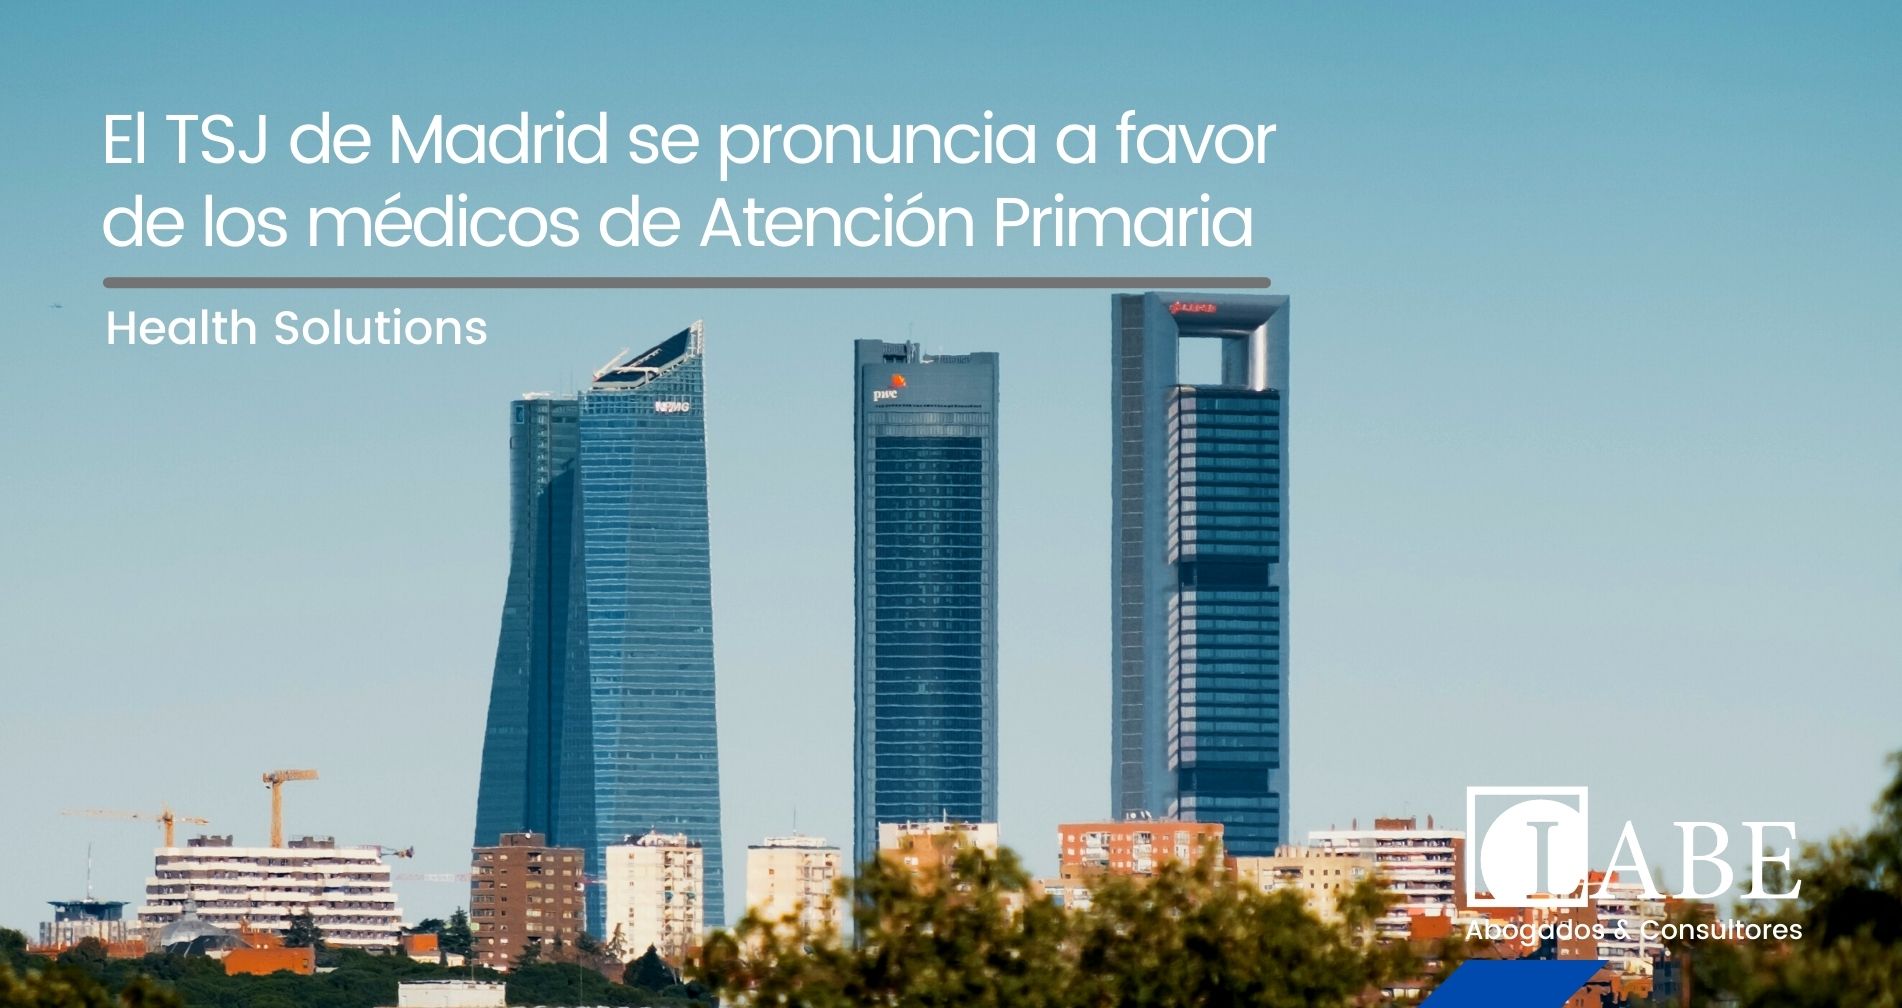 El TSJ de Madrid se pronuncia a favor de los médicos de Atención Primaria